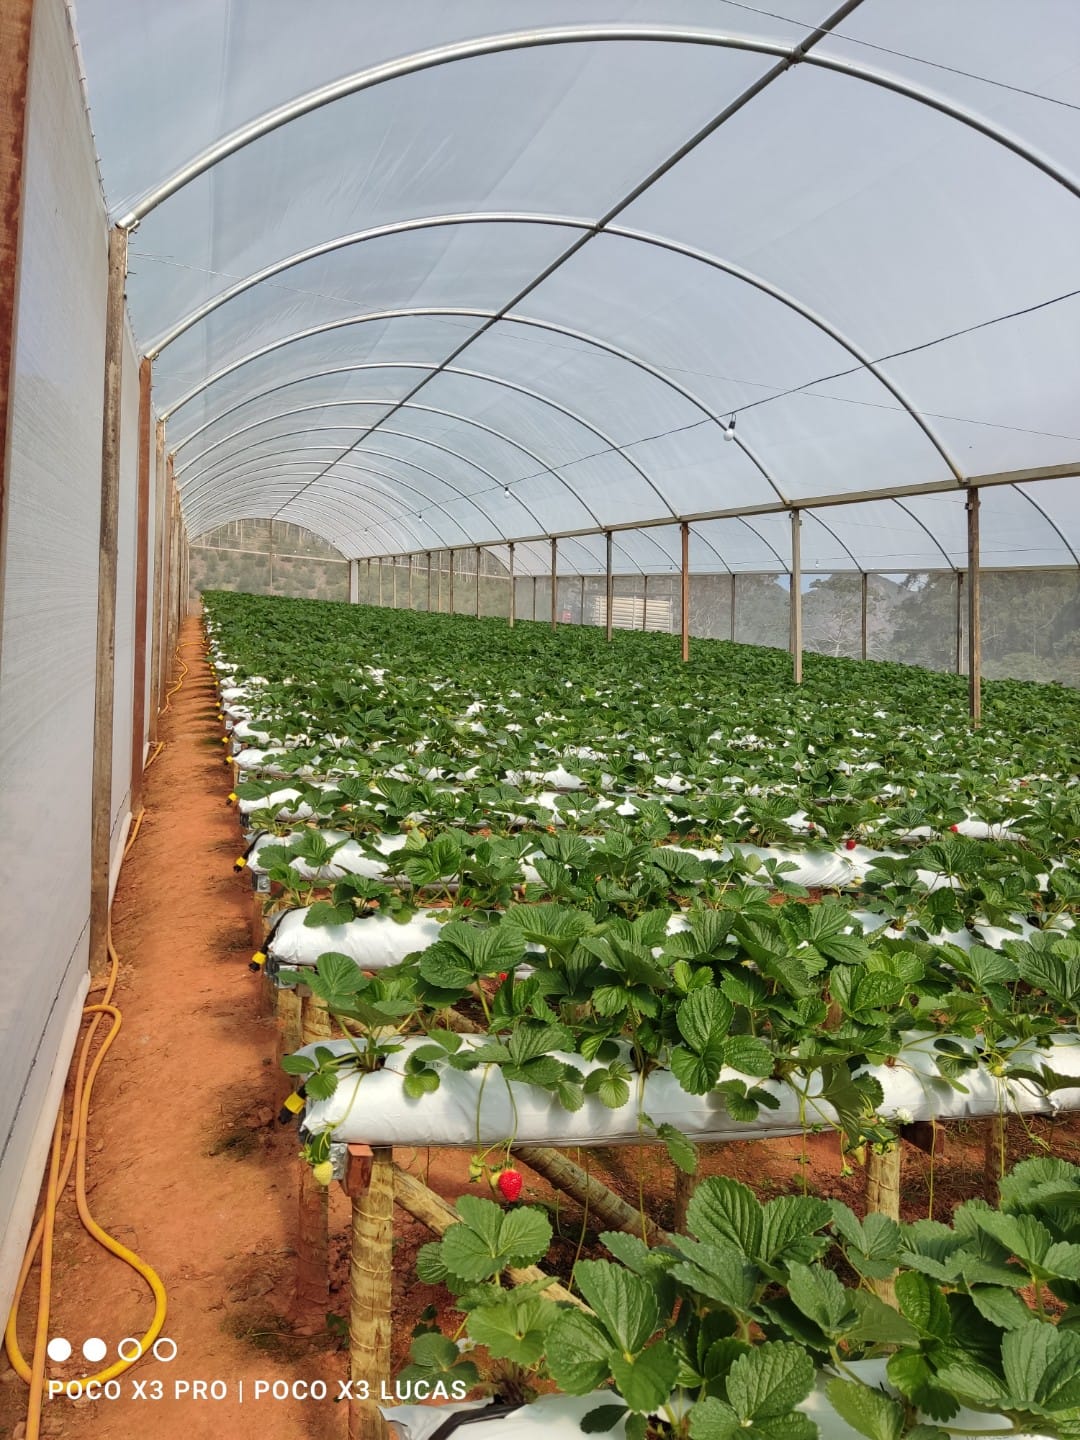 Directrices esenciales para el cultivo protegido de fresas